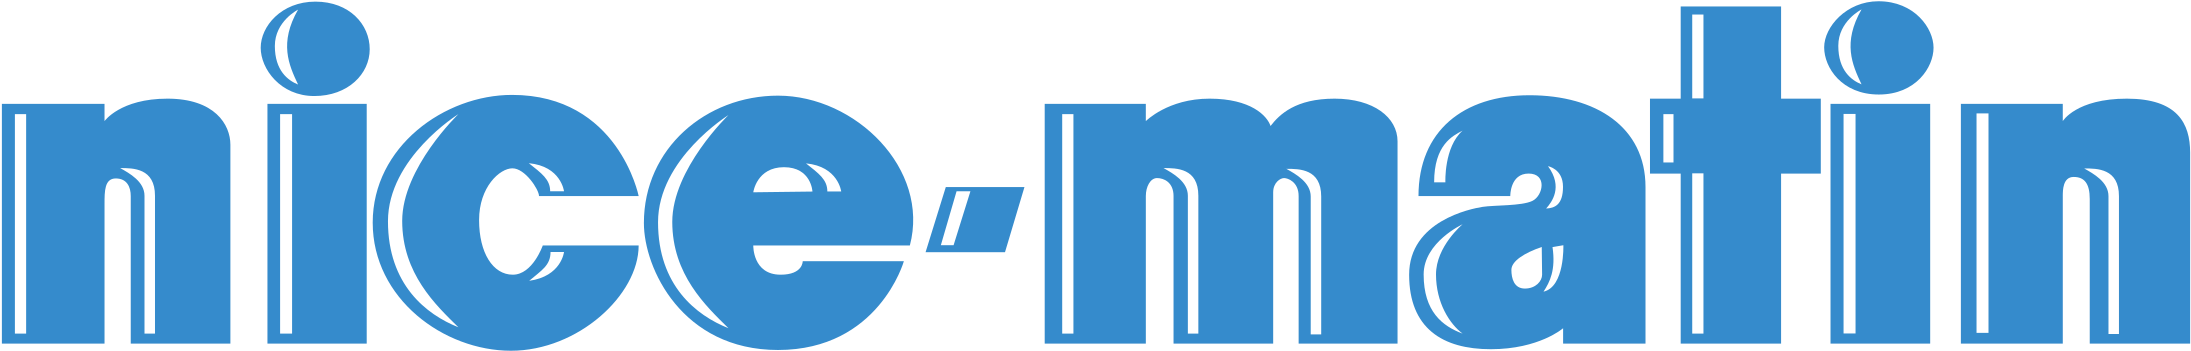 Nice Matin Logo Png Transparent - Nice Matin (2400x2400), Png Download